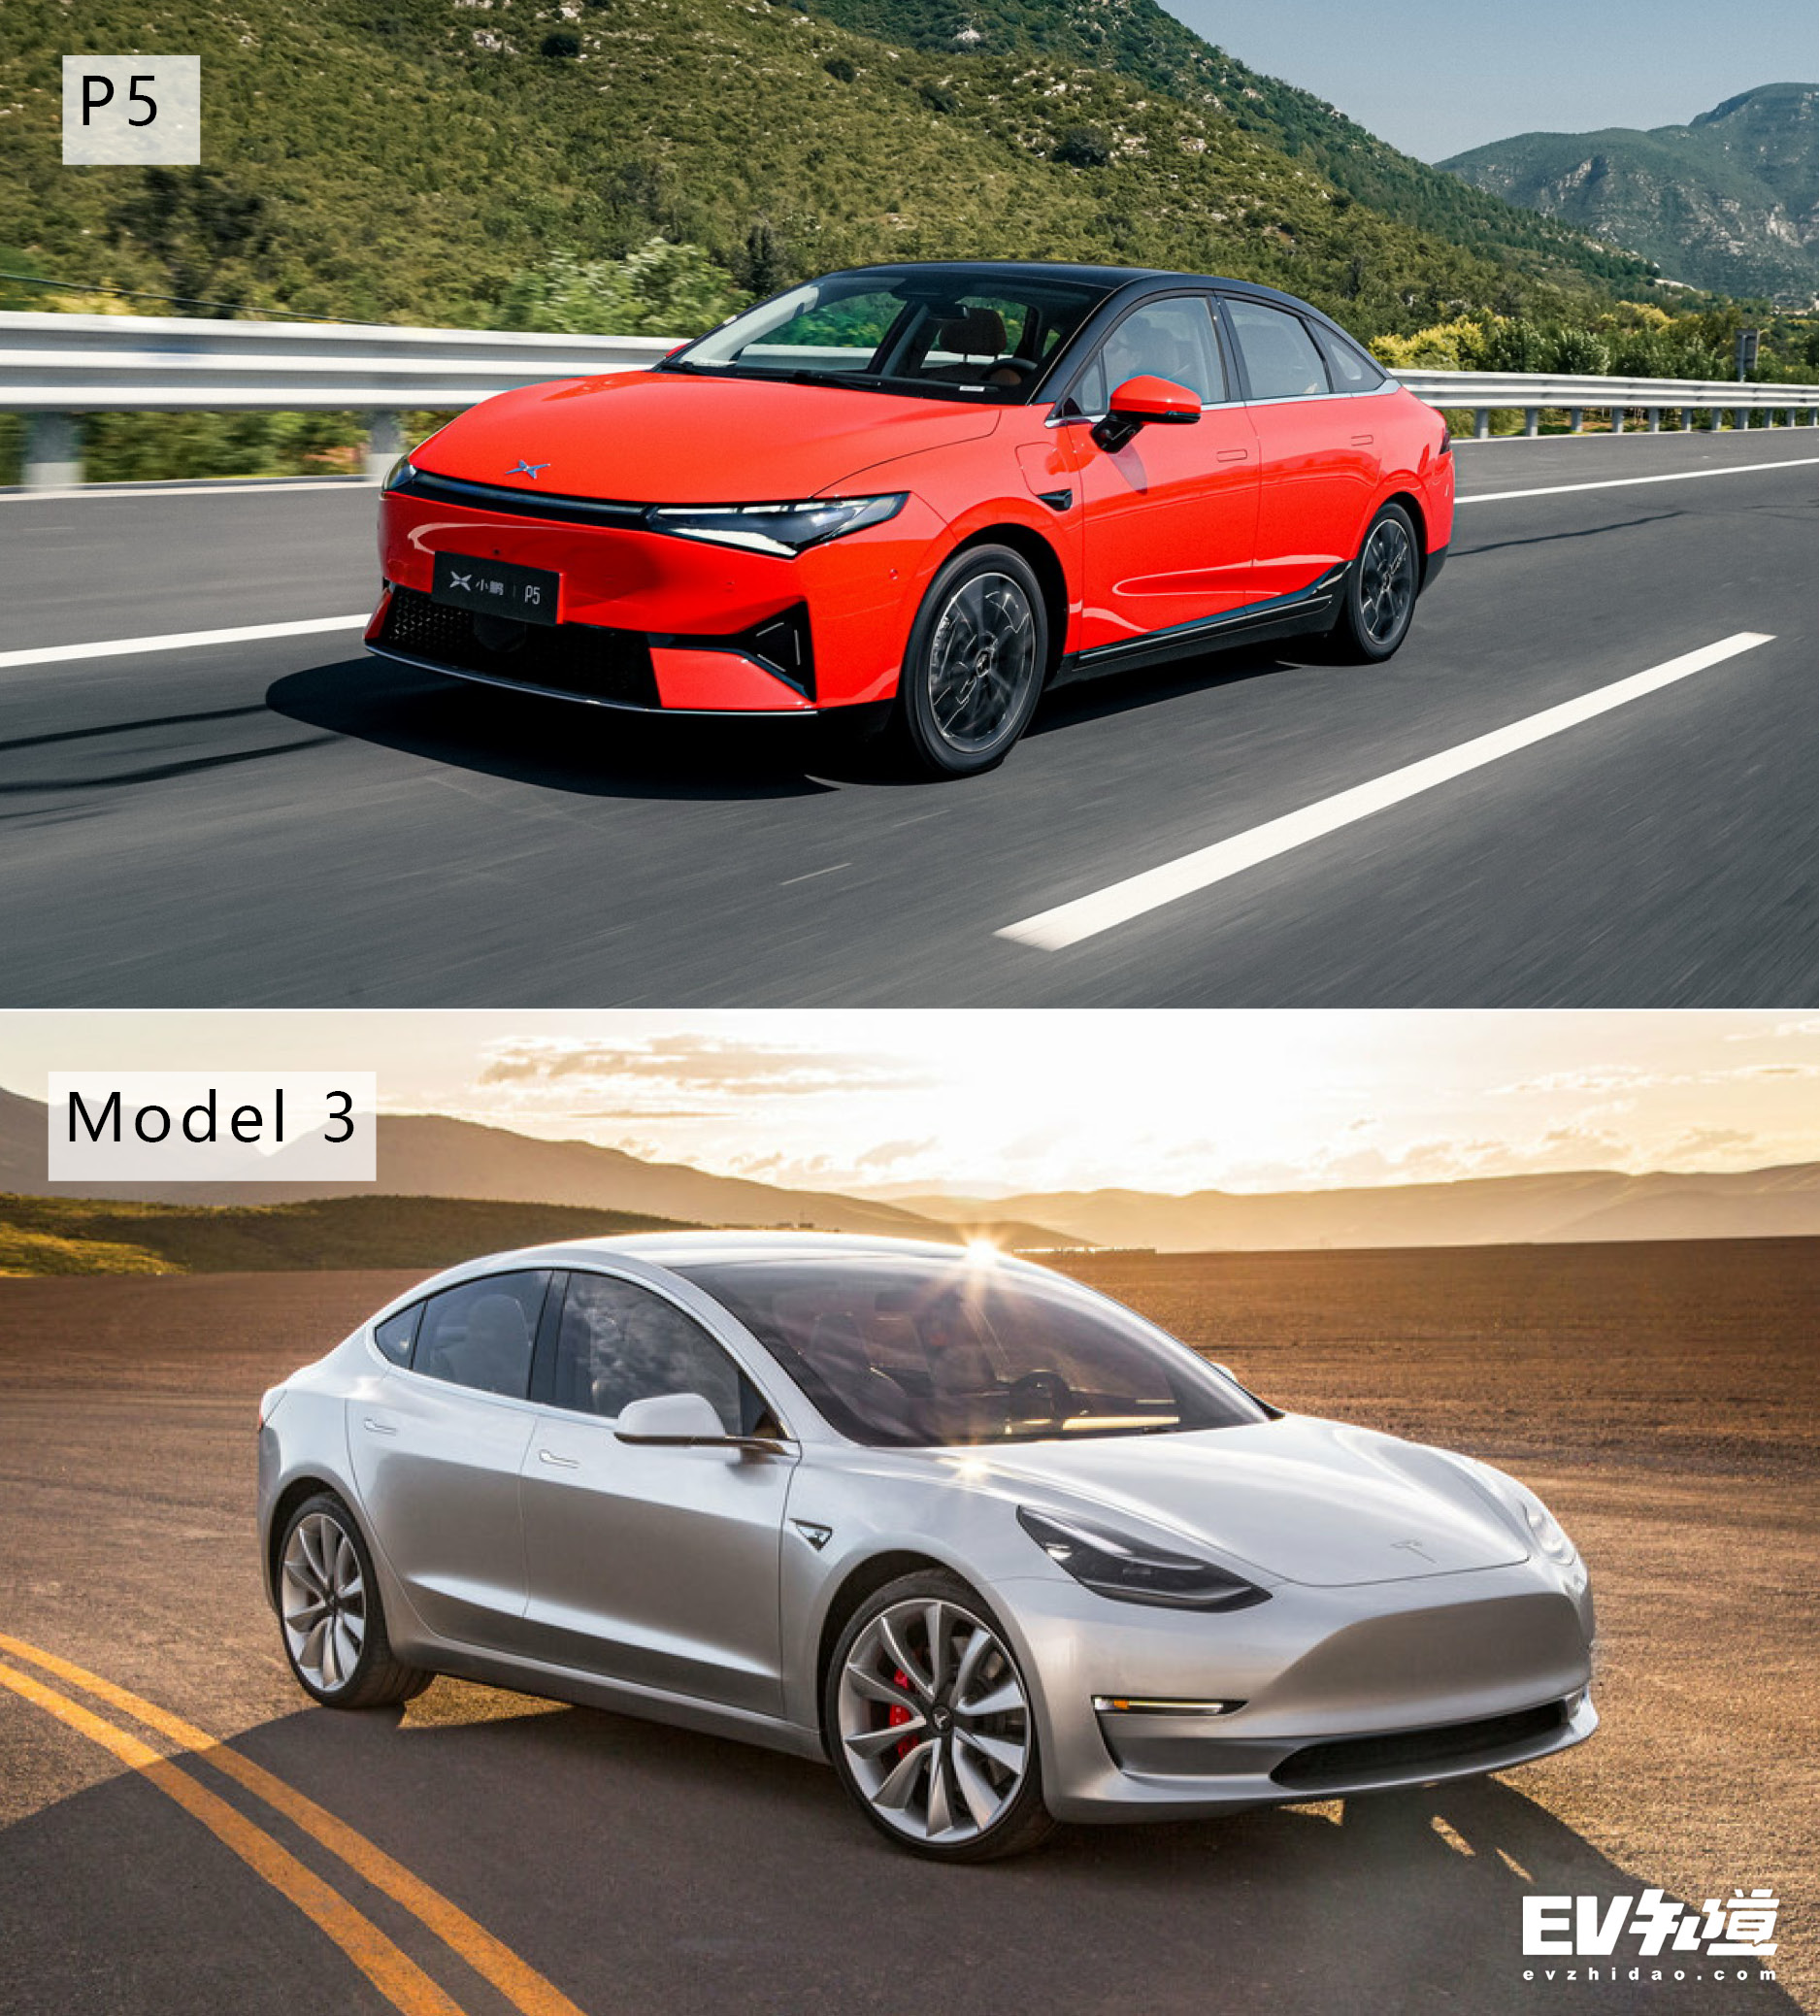 两家科技公司的较量 小鹏P5对比Model 3